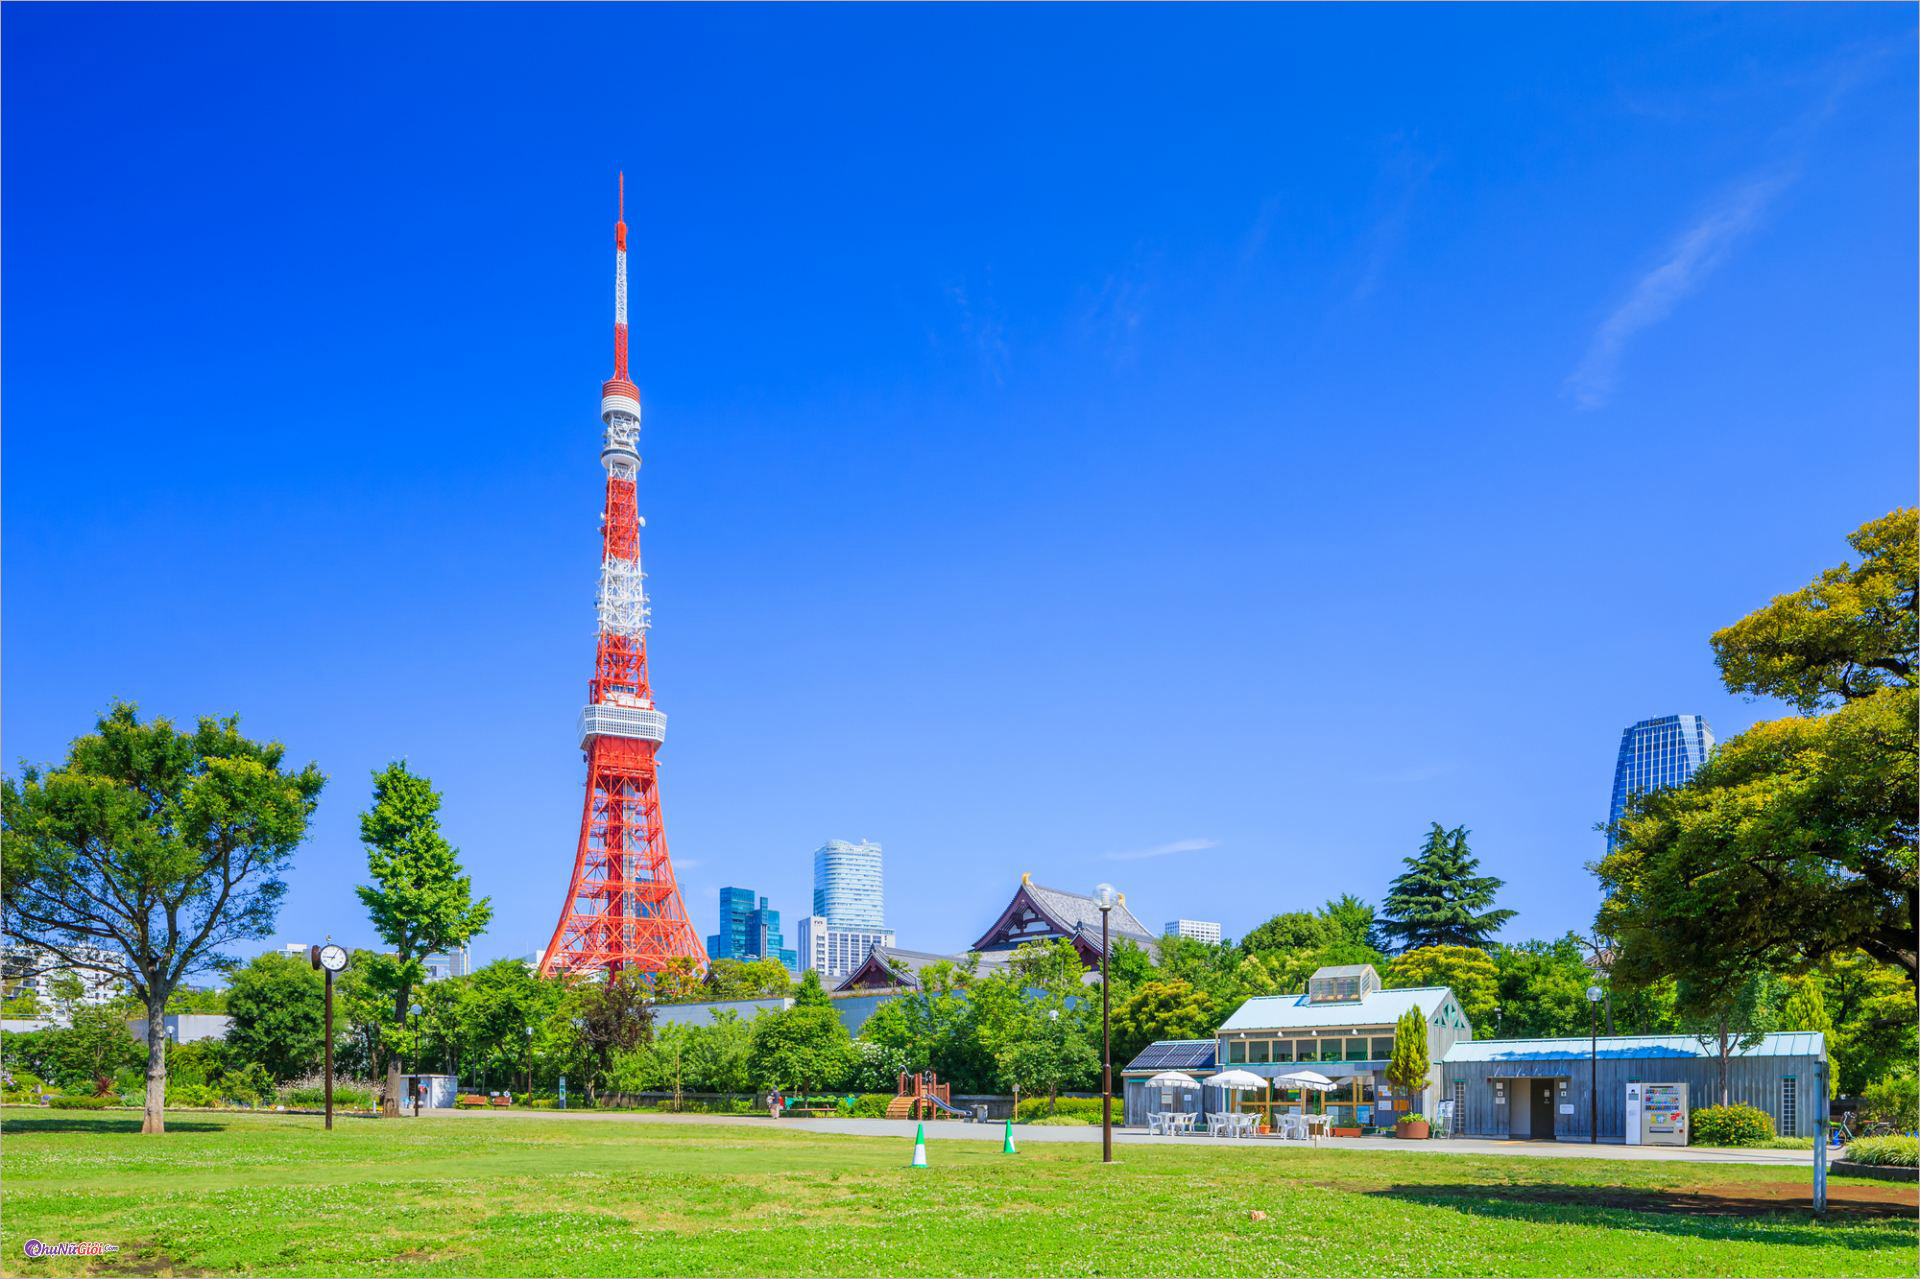 Tháp Tokyo Skytree  điểm đến không nên bỏ qua ở xứ sở mặt trời mọc   iVIVUcom